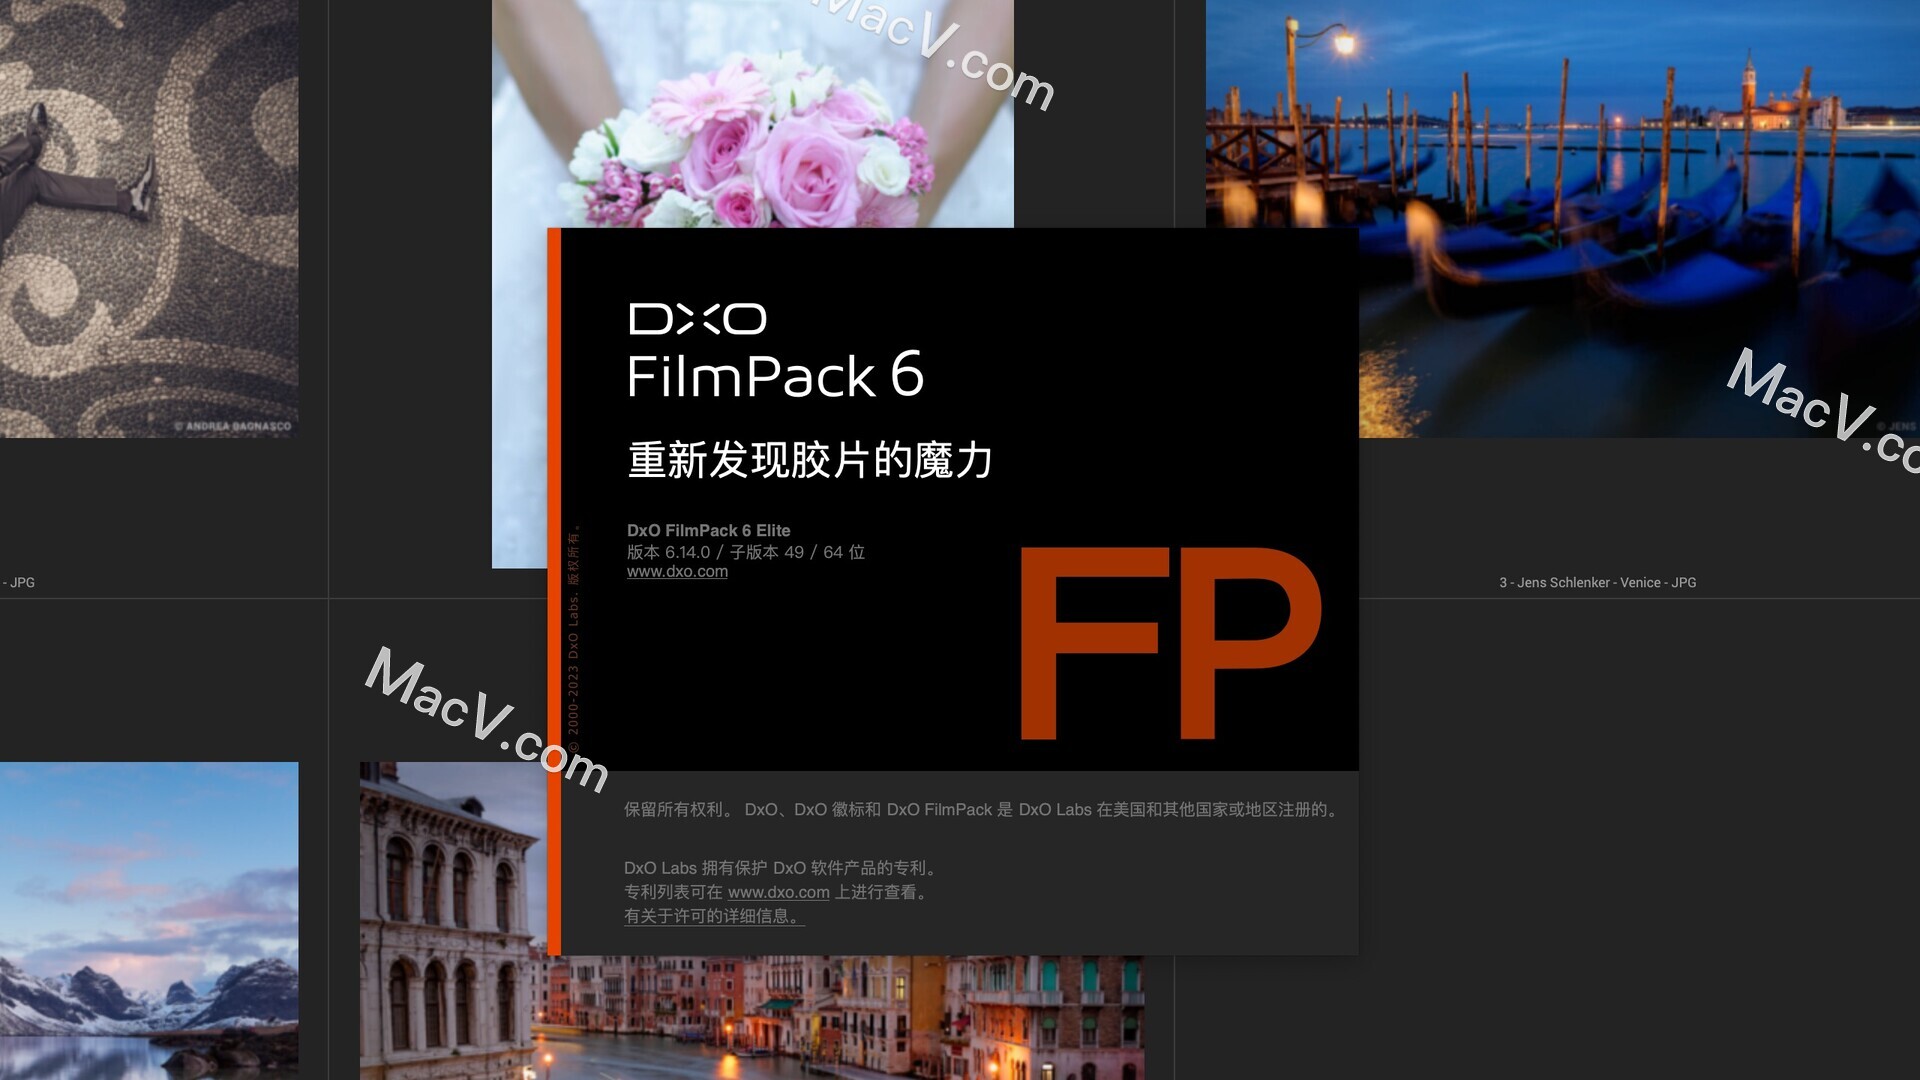 instal the new for apple DxO FilmPack Elite 7.0.0.465